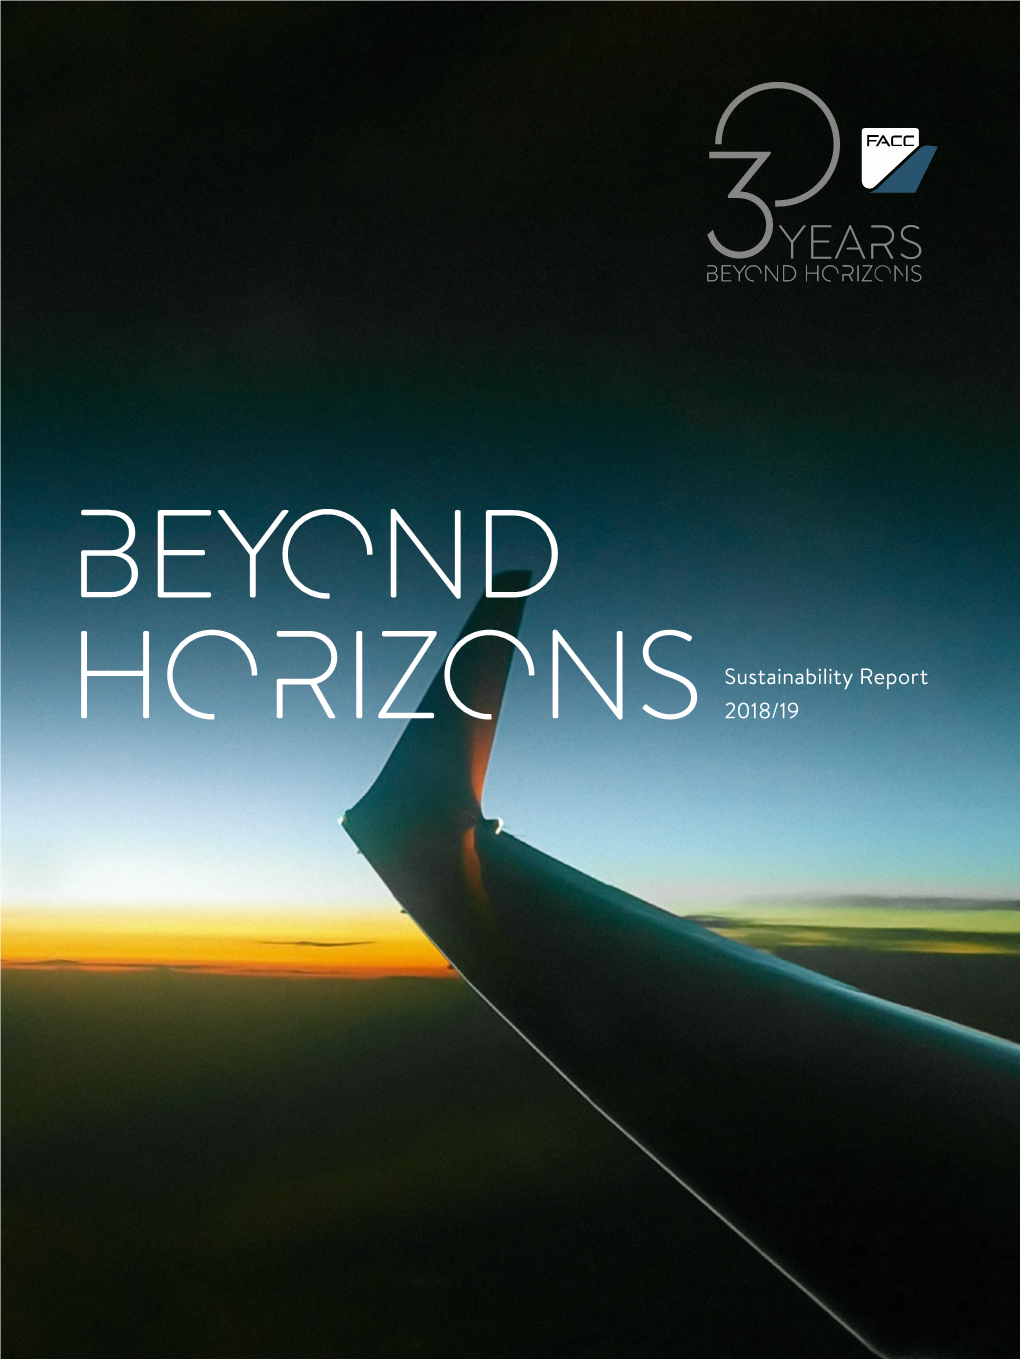 Horizonssustainability Report 2018/19